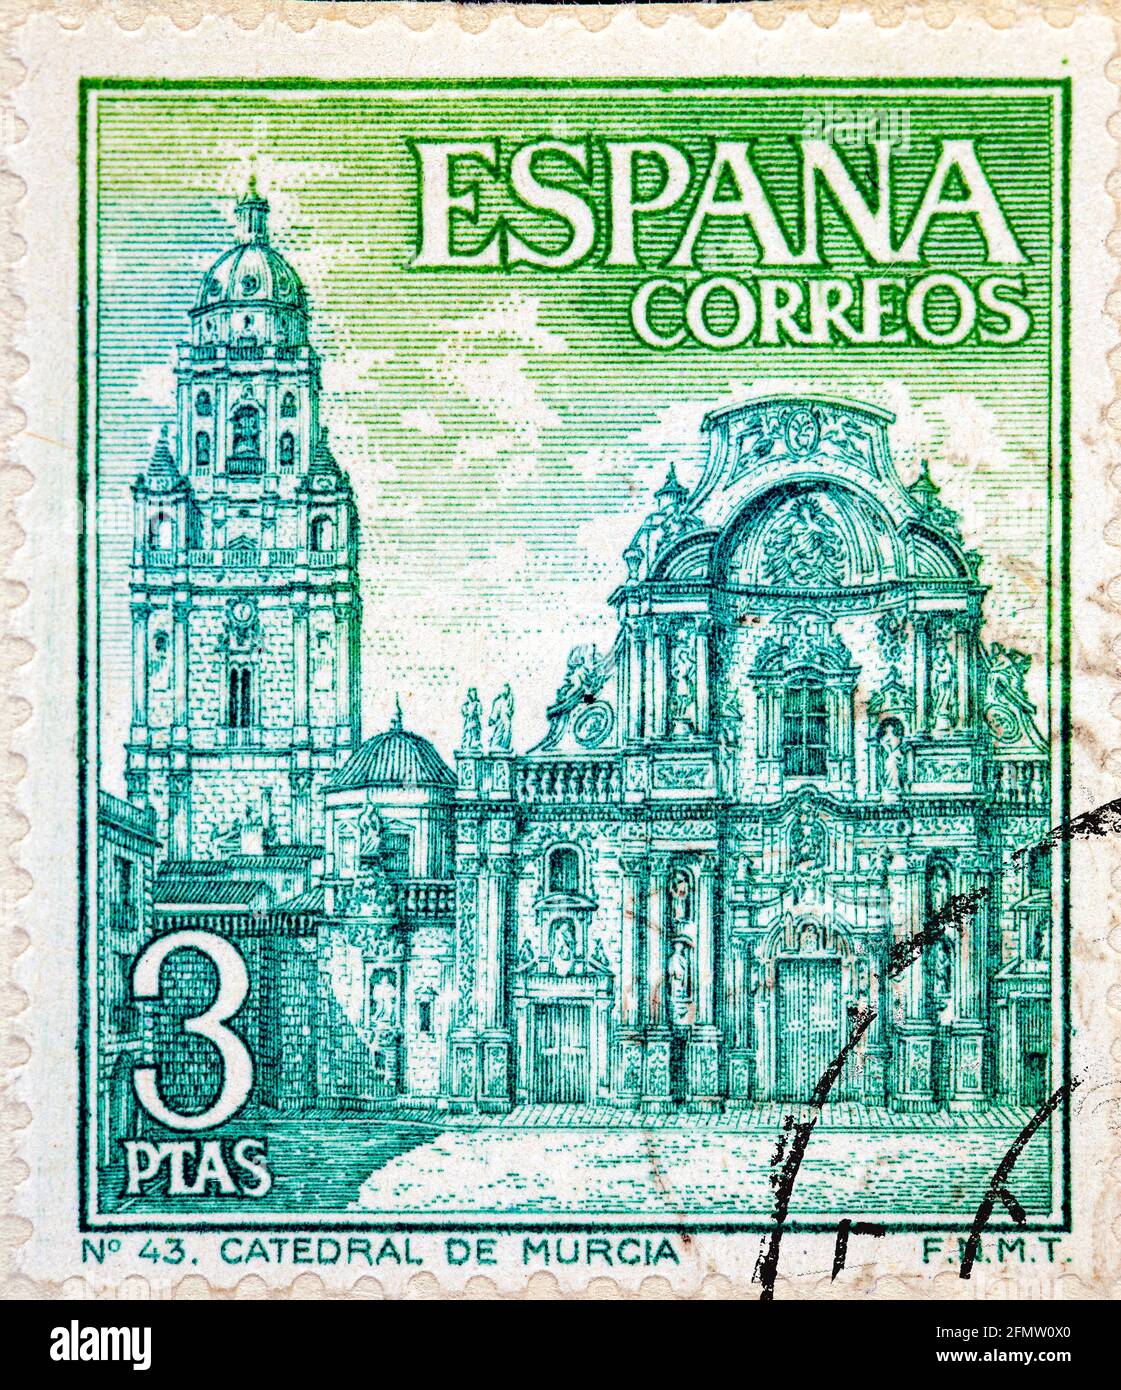 ESPAGNE - VERS 1969: Un timbre imprimé en Espagne montre la cathédrale de Murcie vers 1969 Banque D'Images